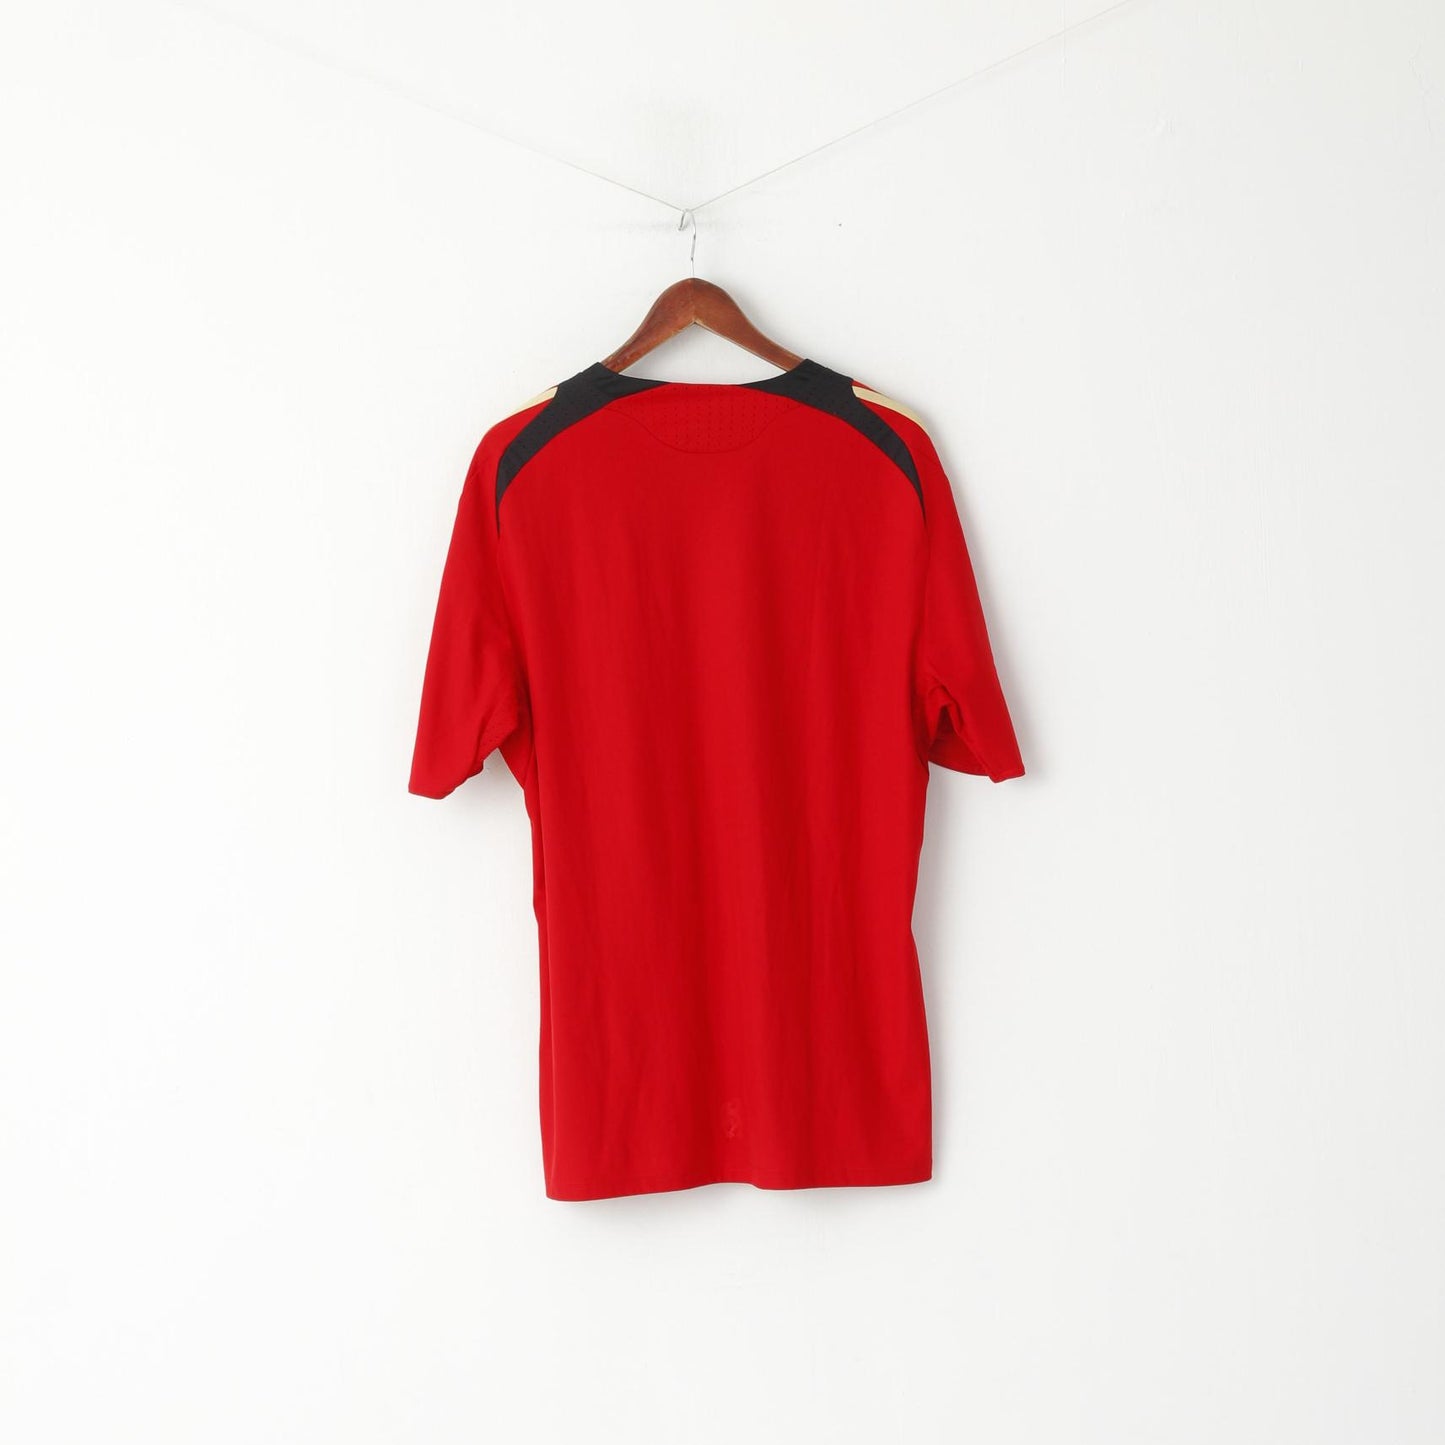 Adidas Hommes XL Chemise Rouge Deutscher Fussball Bund Football Vintage Jersey Top